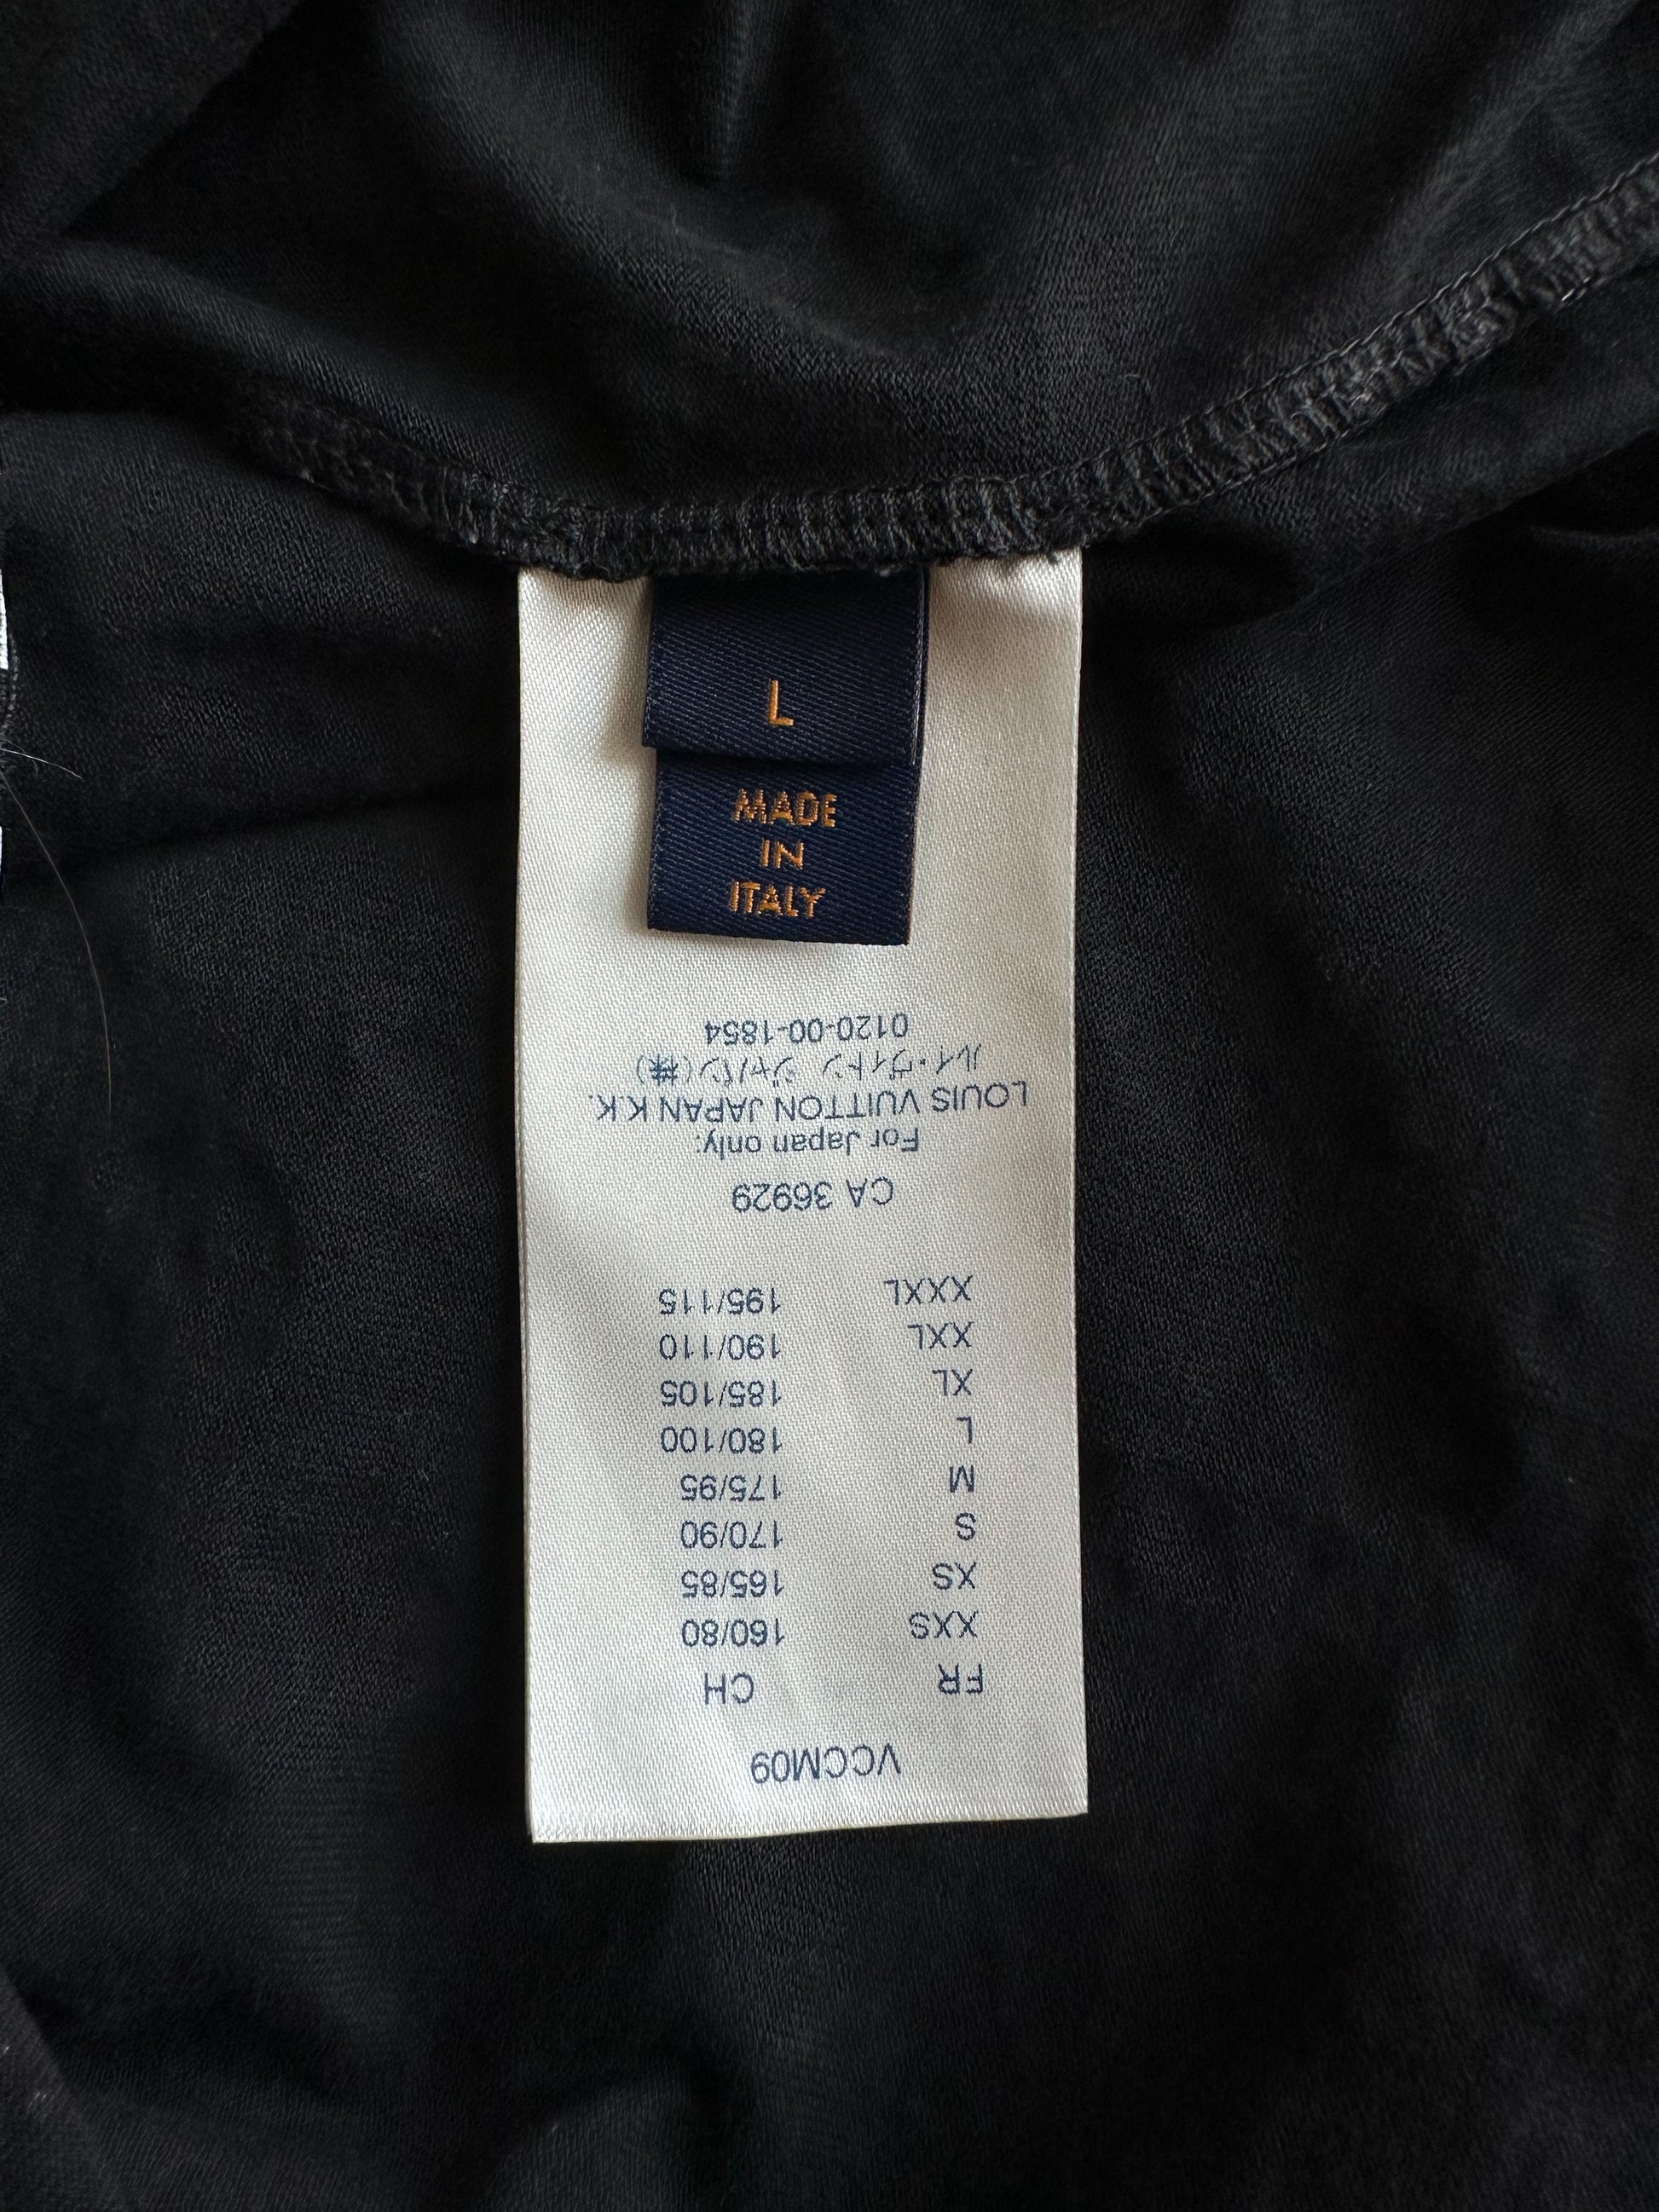 Monogram Gradient T-shirt Louis Vuitton